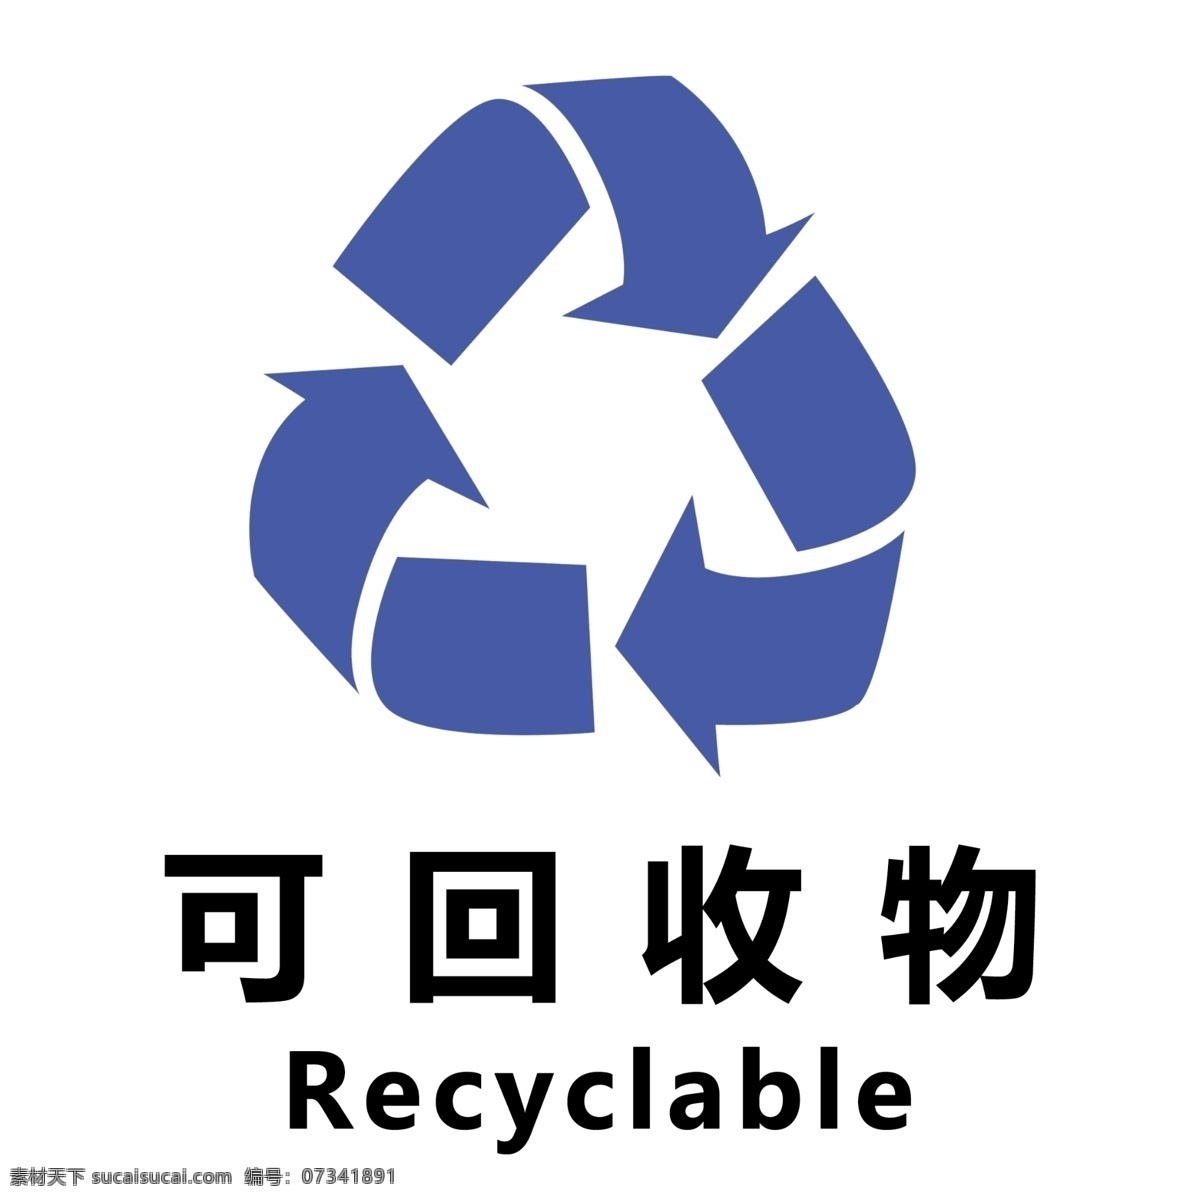 可回收物展板 简约 可回收物 垃圾 温馨 喷绘